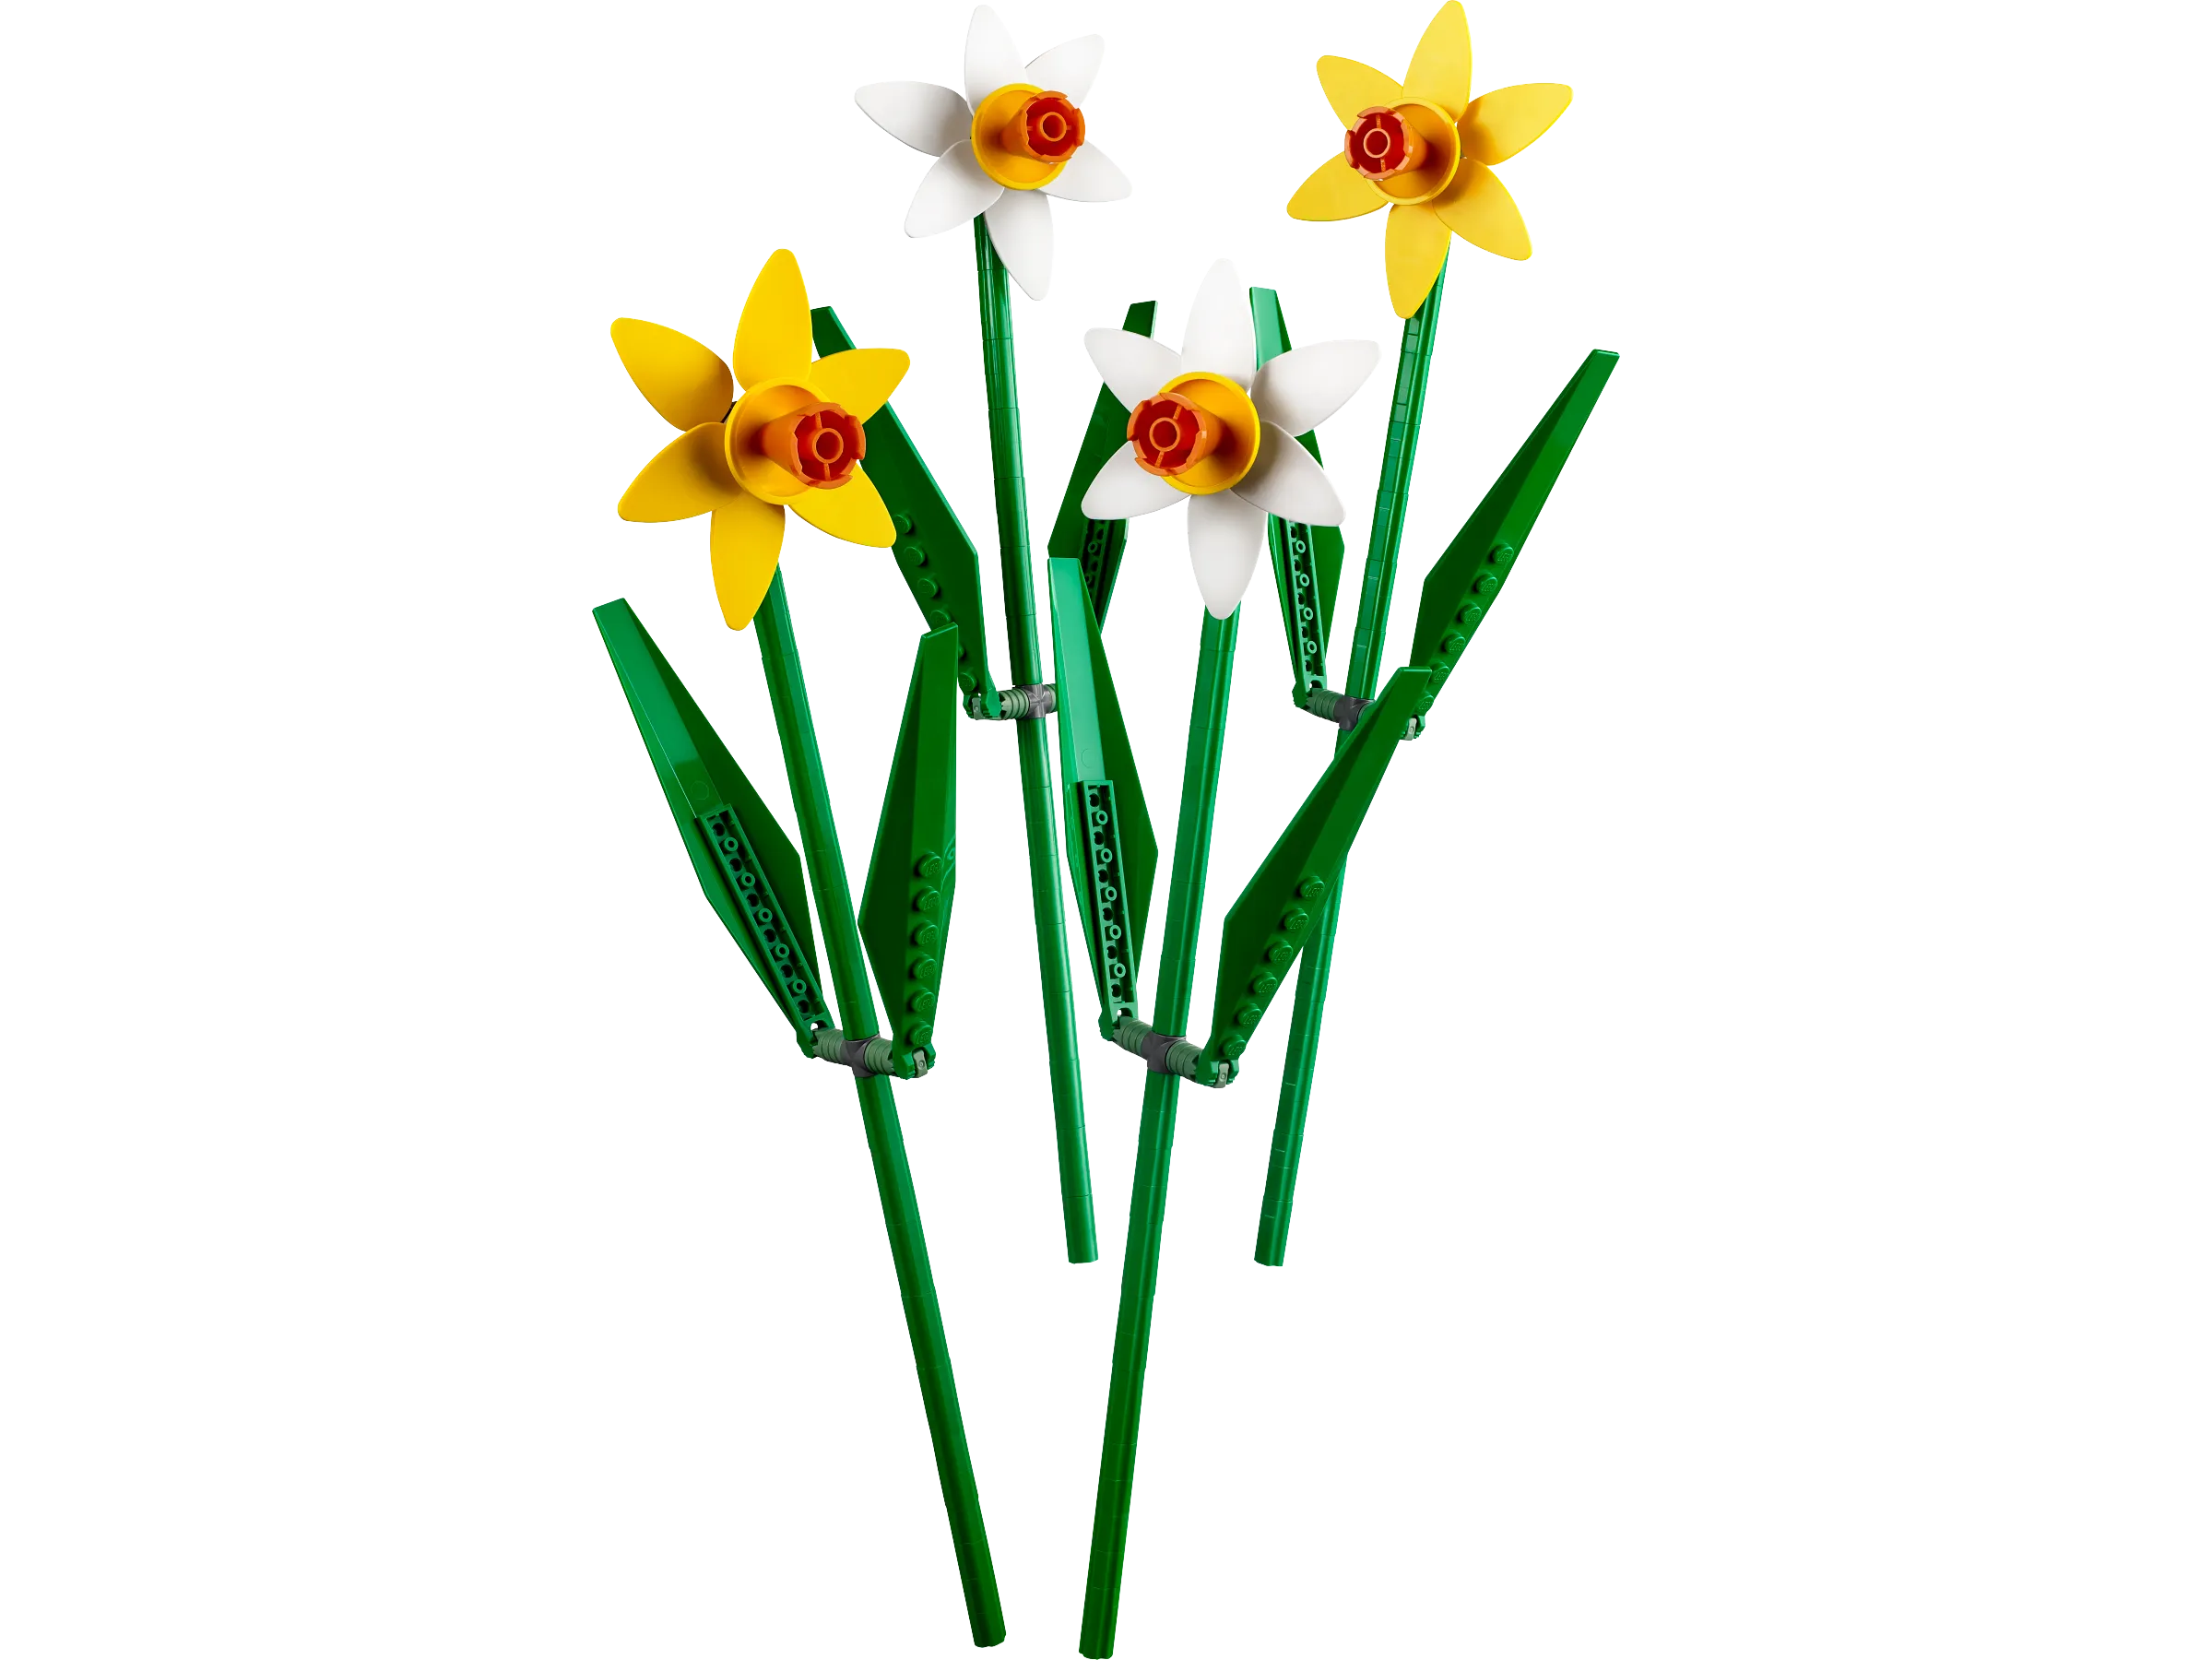 Daffodils Gallery